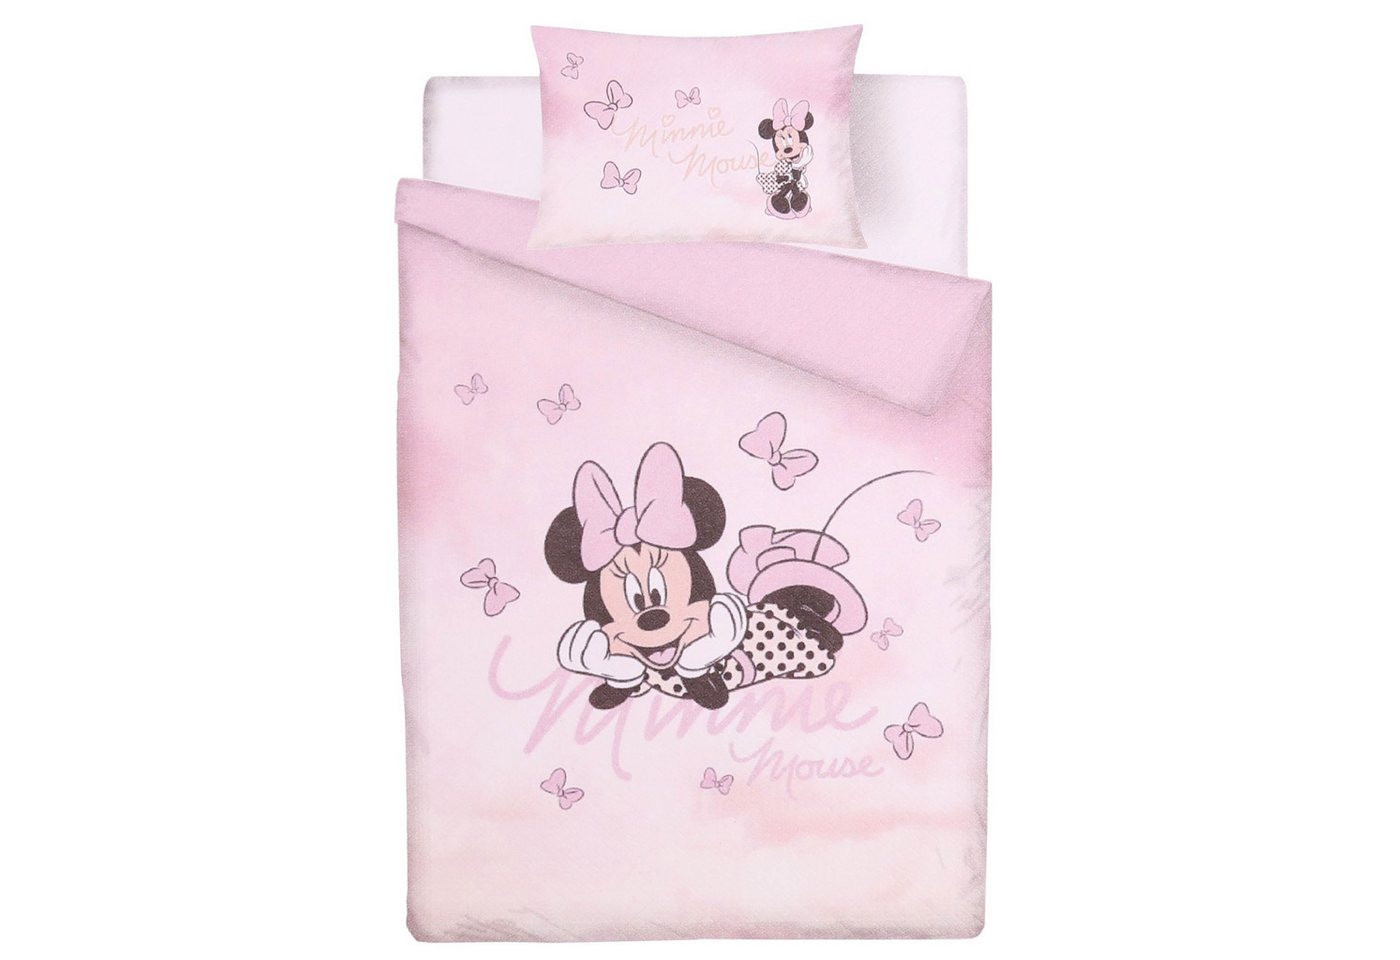 Bettbezug Pinkes Bettwäsche-Set aus Baumwolle Minnie Maus 135x200 cm, Sarcia.eu von Sarcia.eu